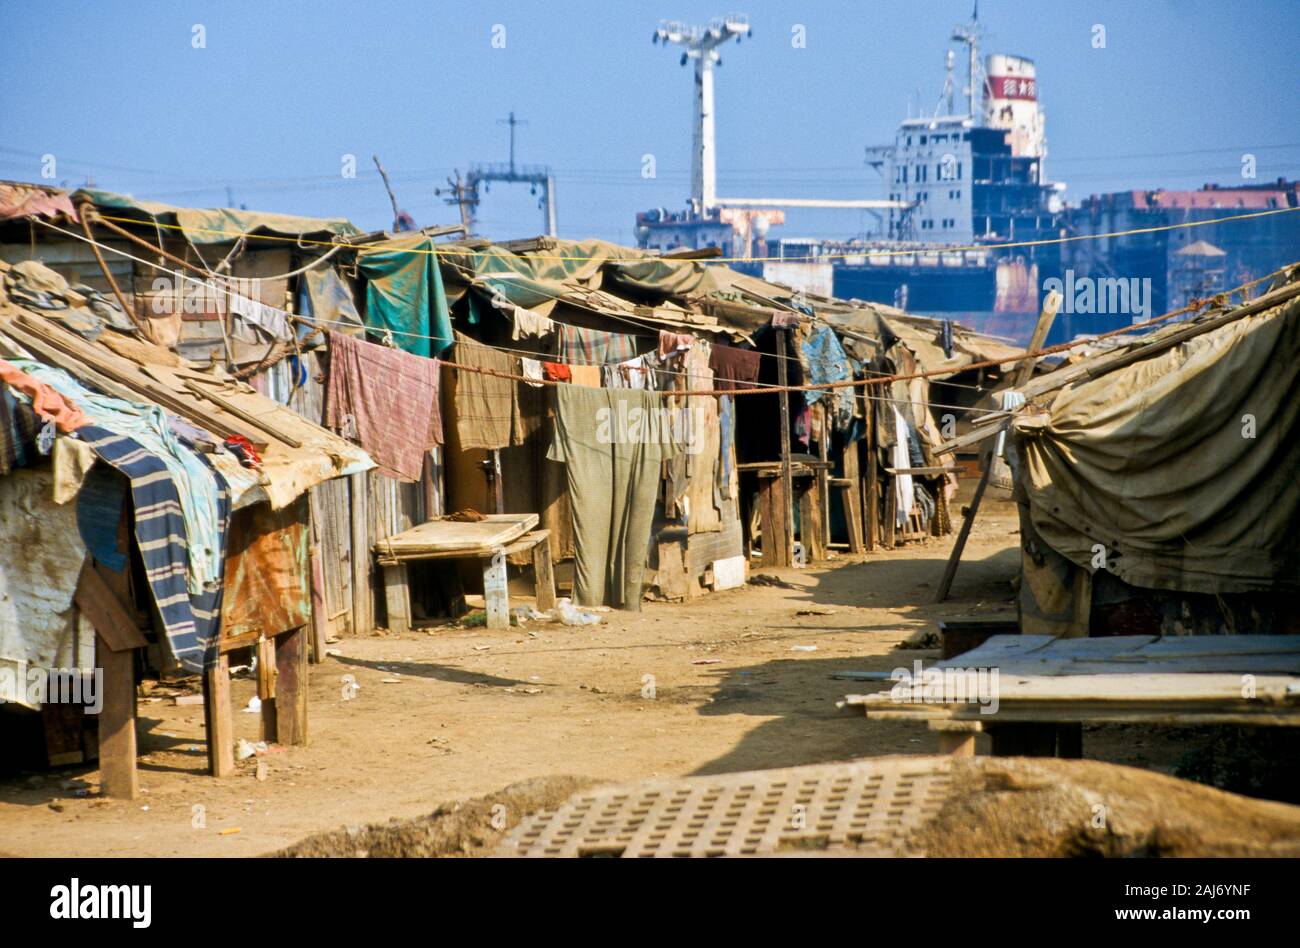 Alang ist die größte shipbreaking Ort auf Erden. Arbeitskräfte aus den armen Regionen in Indien arbeiten unter schrecklichen Bedingungen. Stockfoto